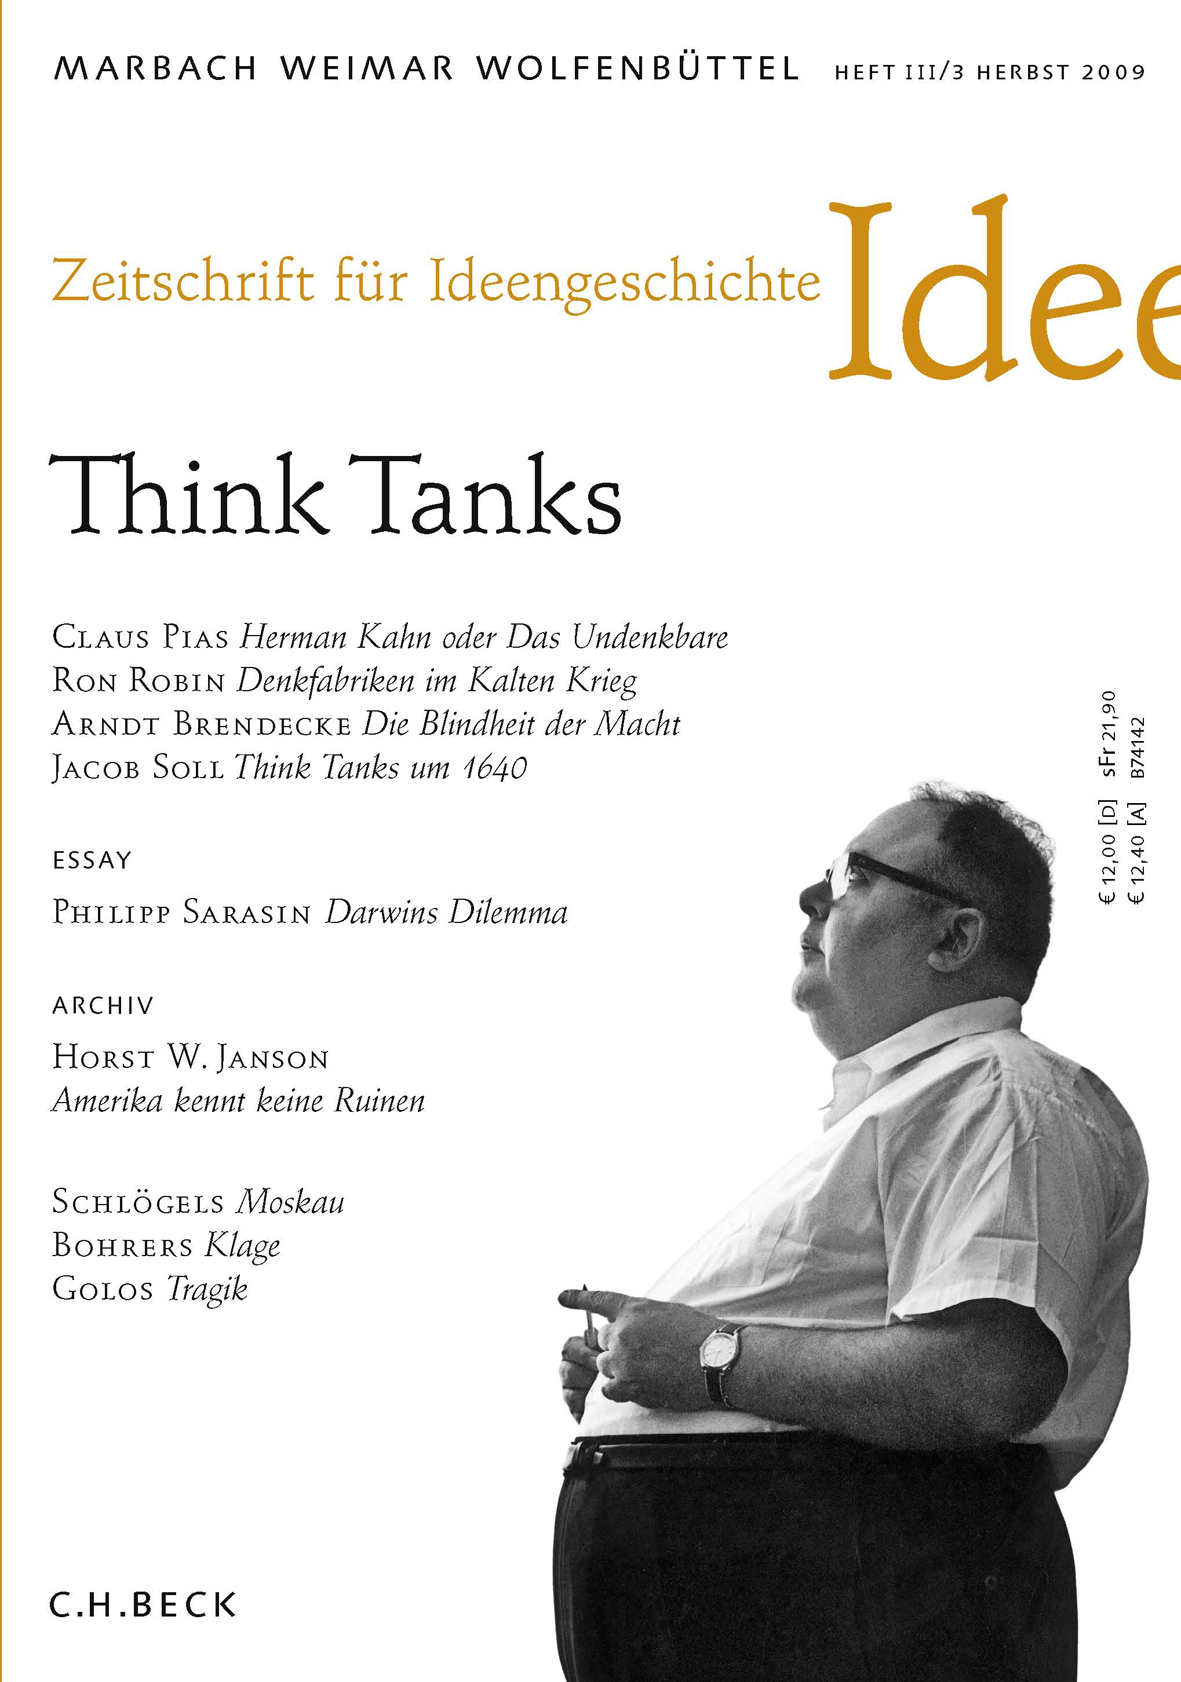 cover of Heft III/3 Herbst 2009